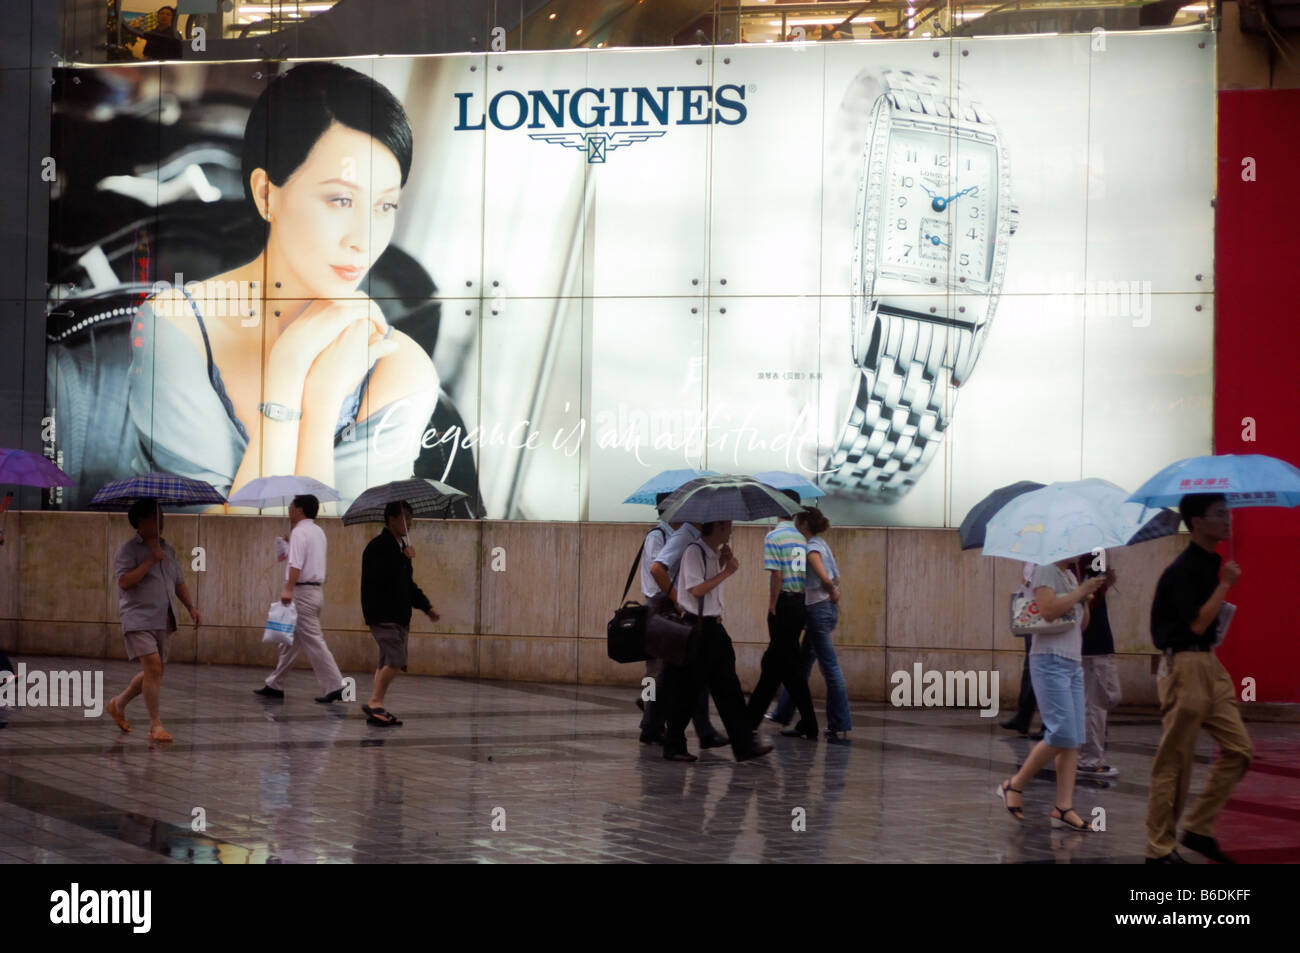 La publicité pour les montres de marques de luxe à Chongqing, Chine Banque D'Images